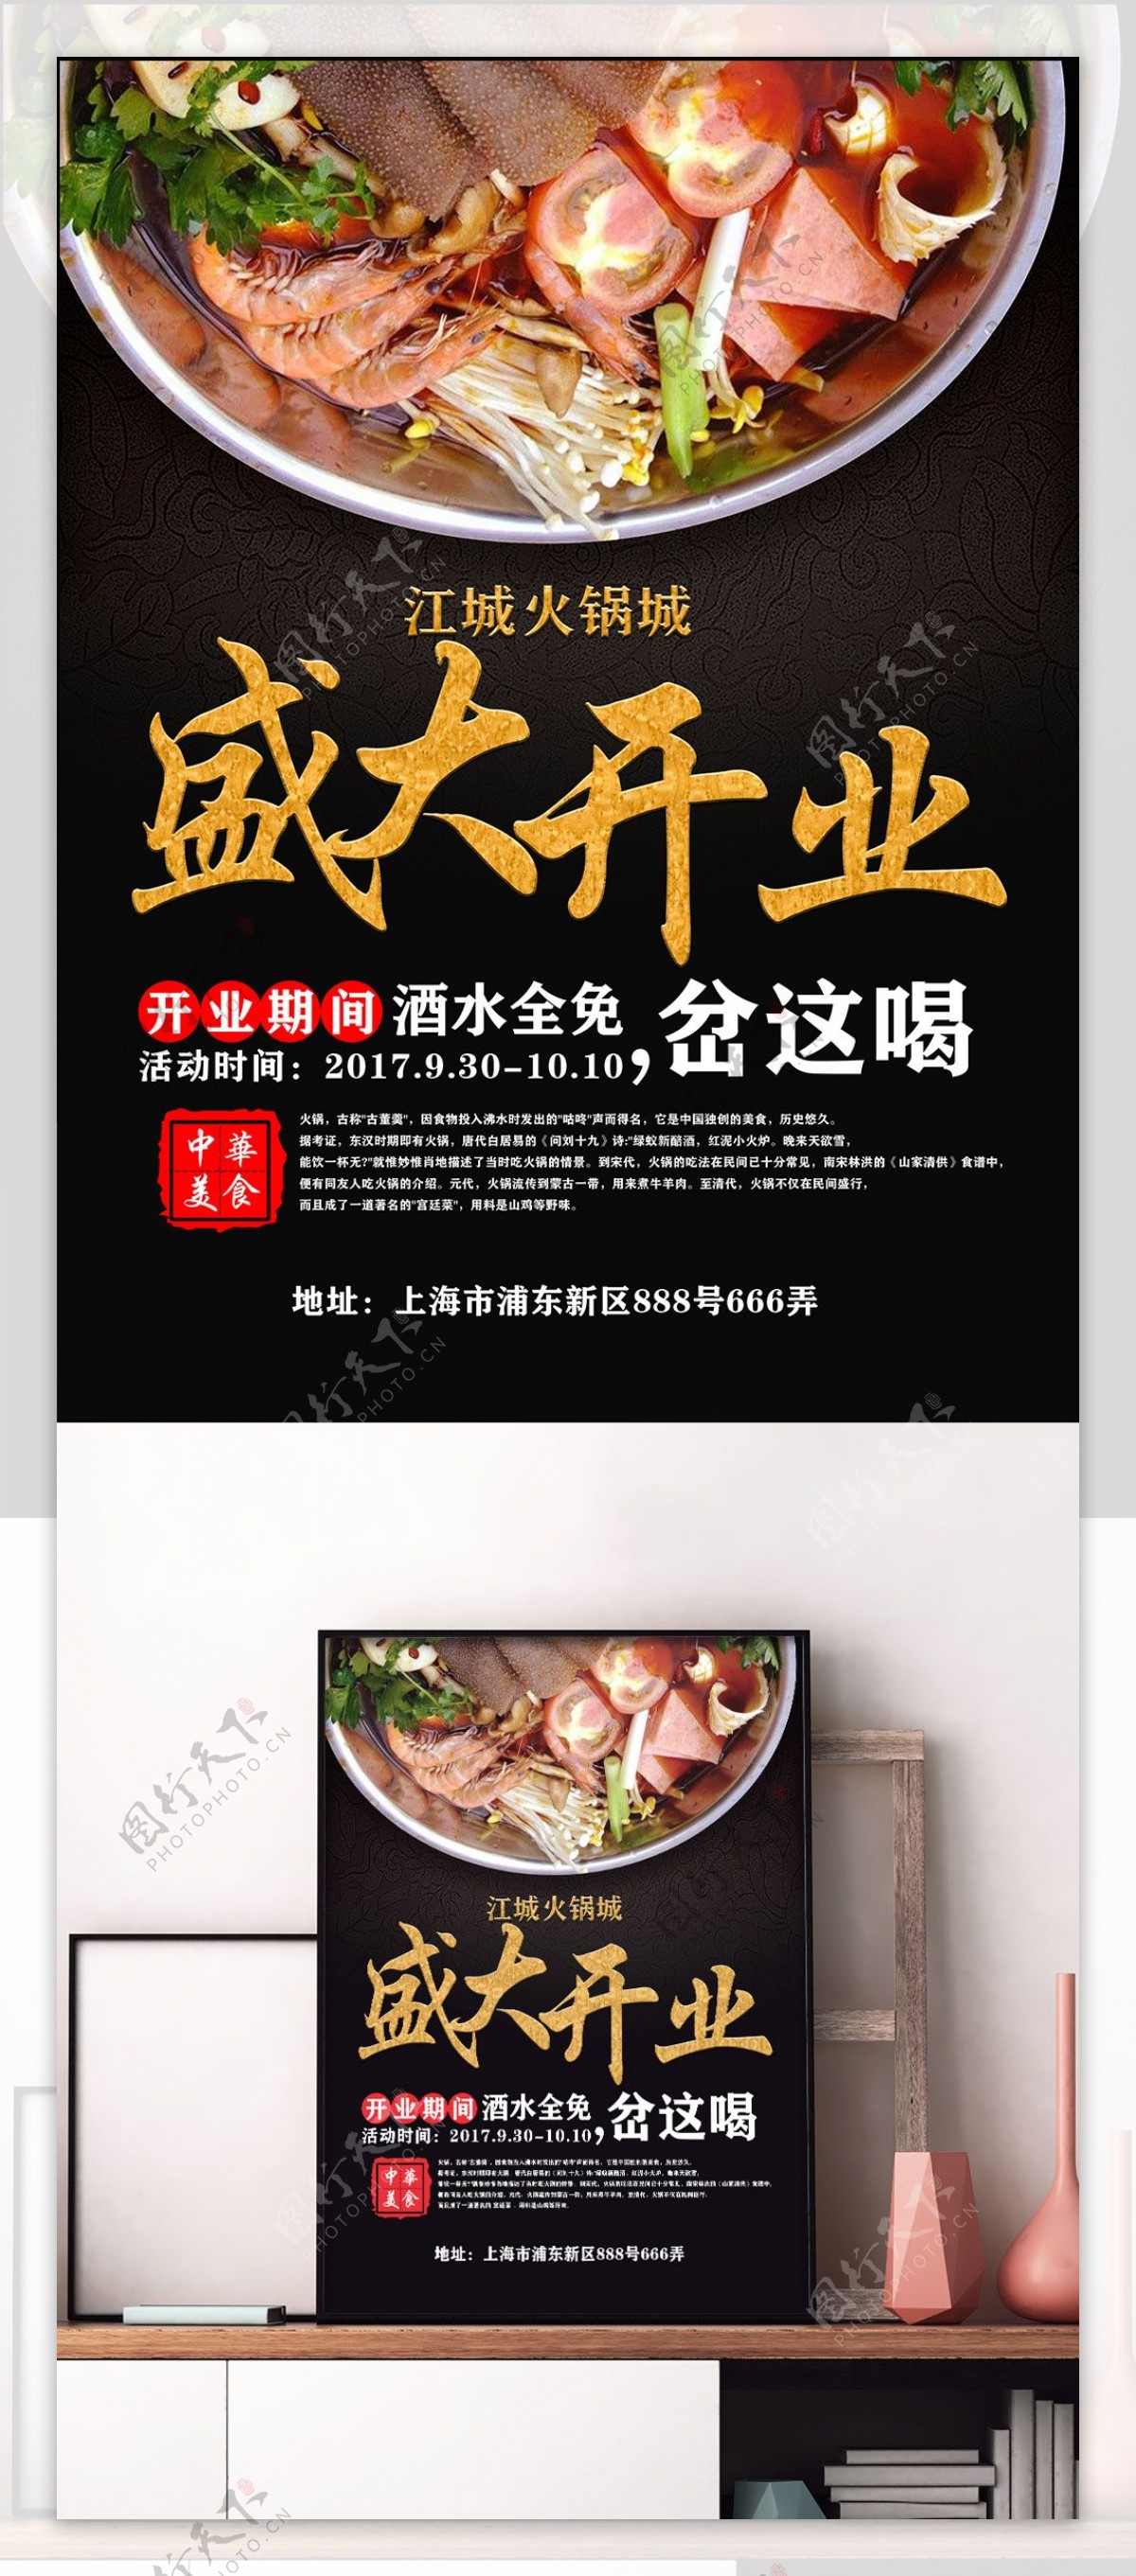 江城火锅城盛大开业创意海报设计